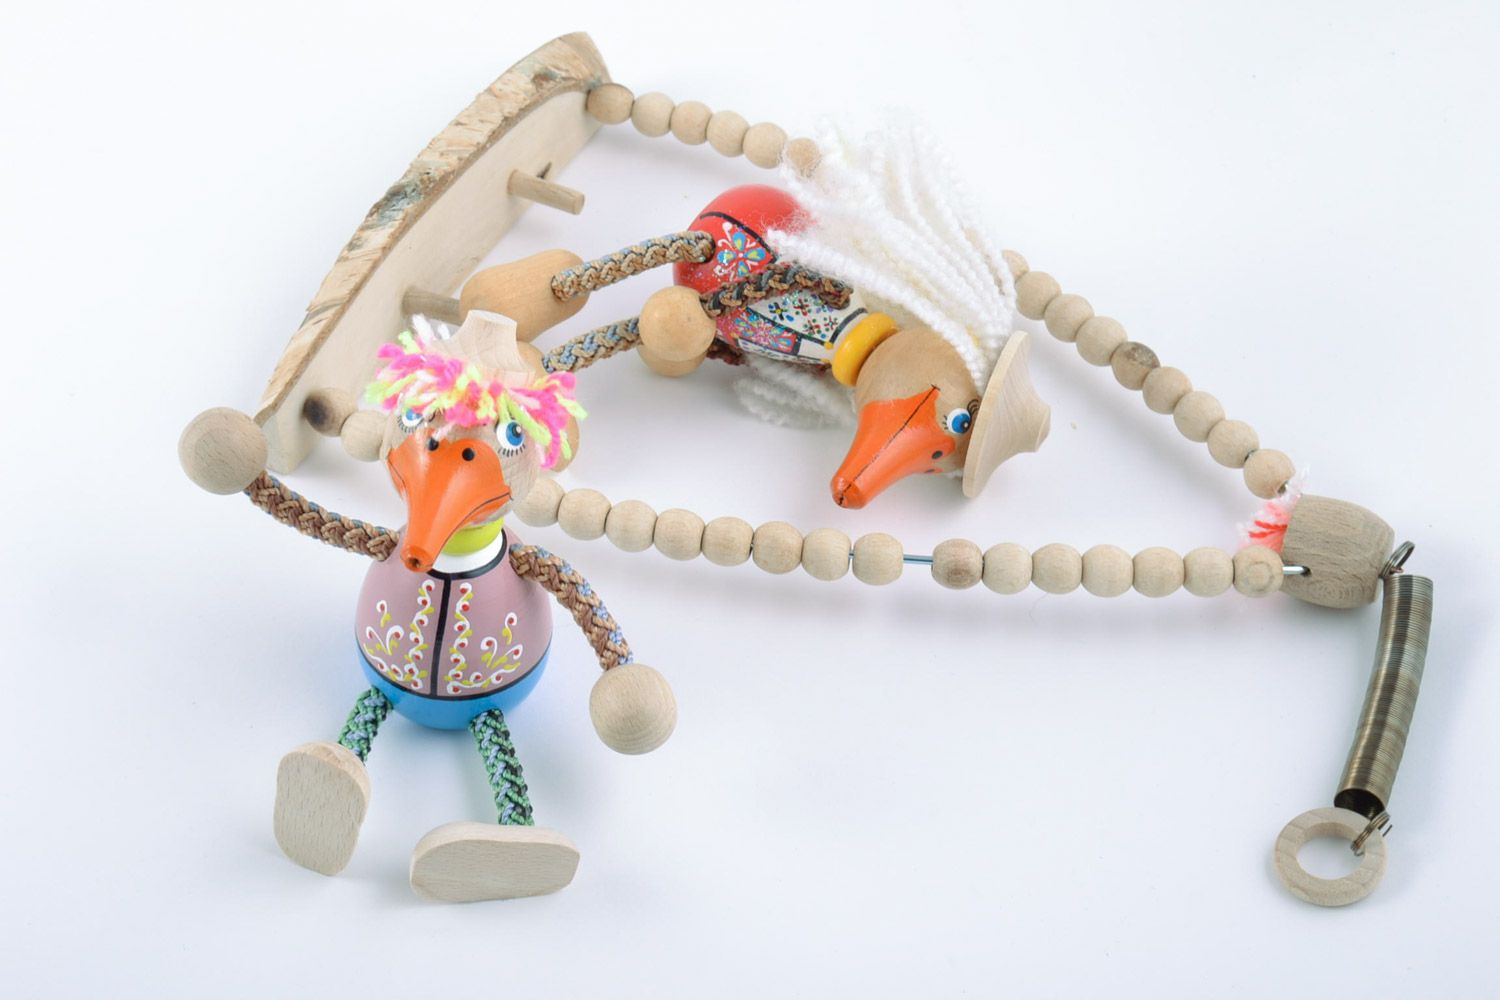 Öko Spielzeuge Set Enten auf Schaukel 2 Stück Handarbeit öko rein Bemalung foto 5